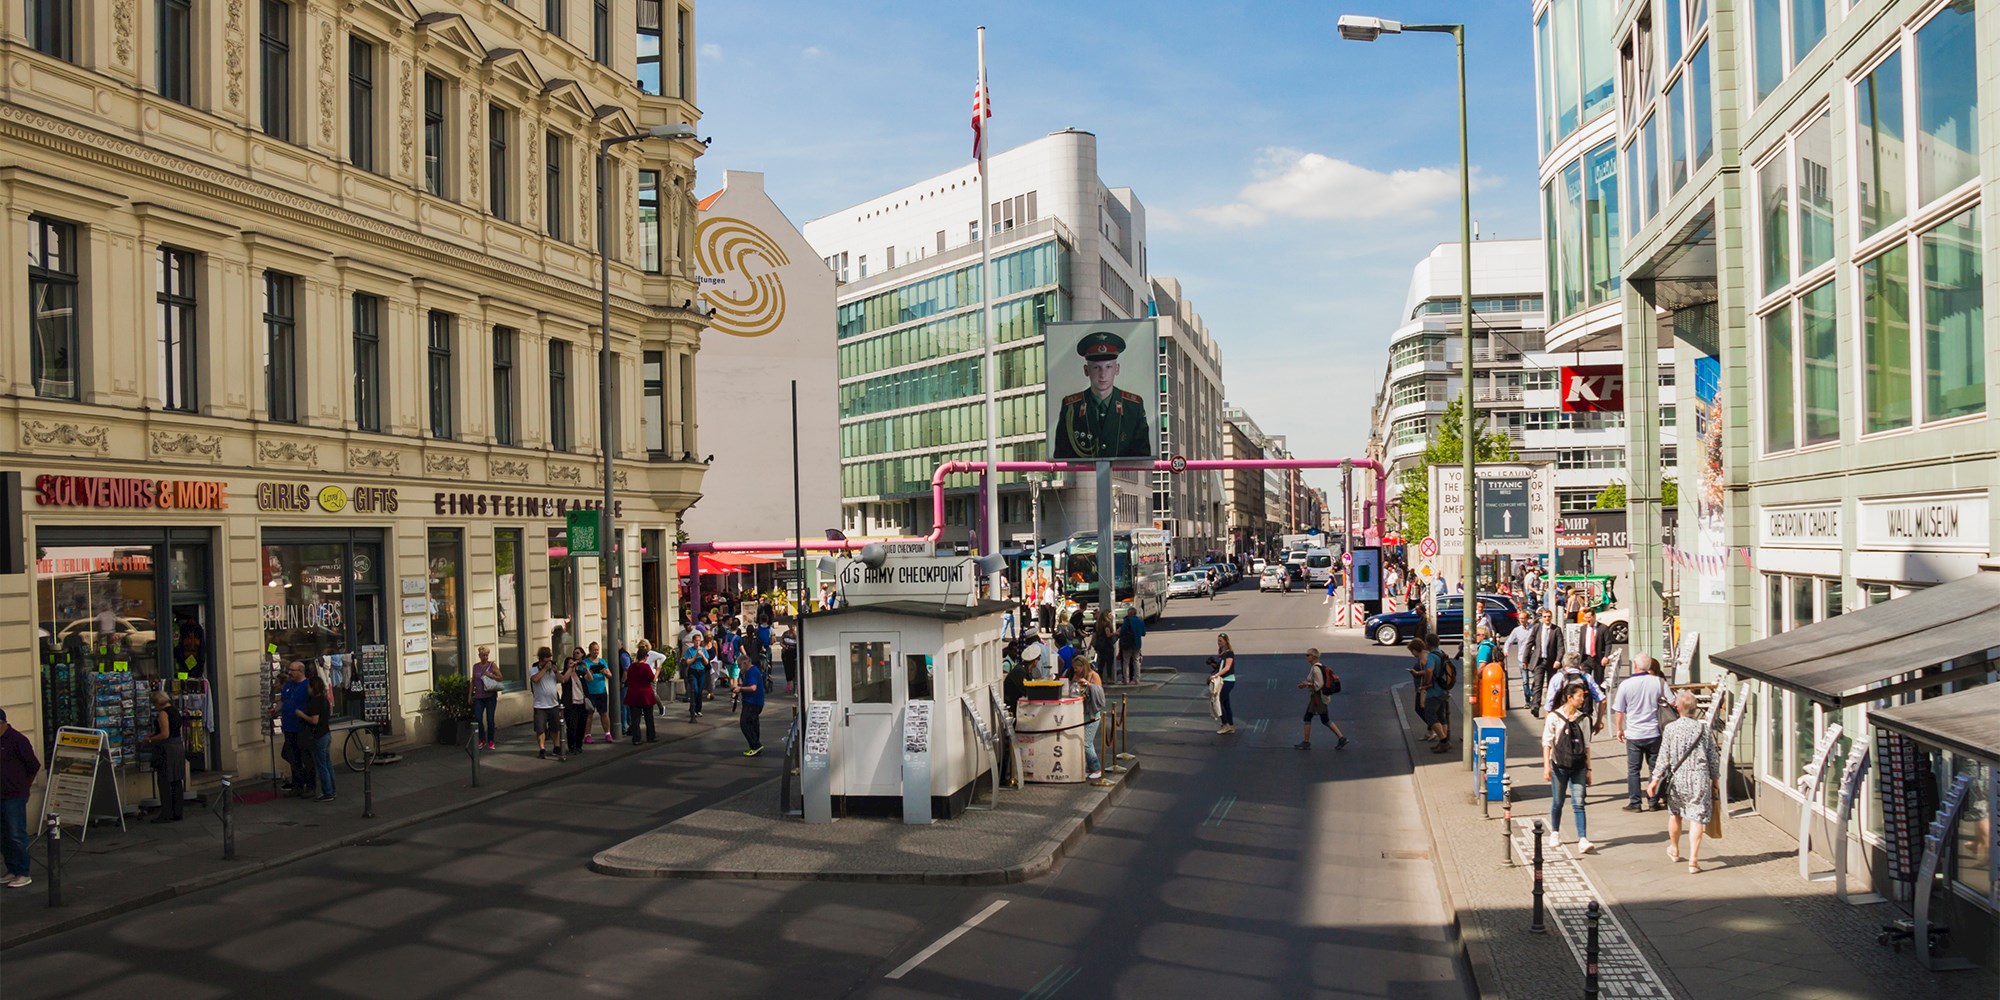 Checkpoint Charlie i Berlin